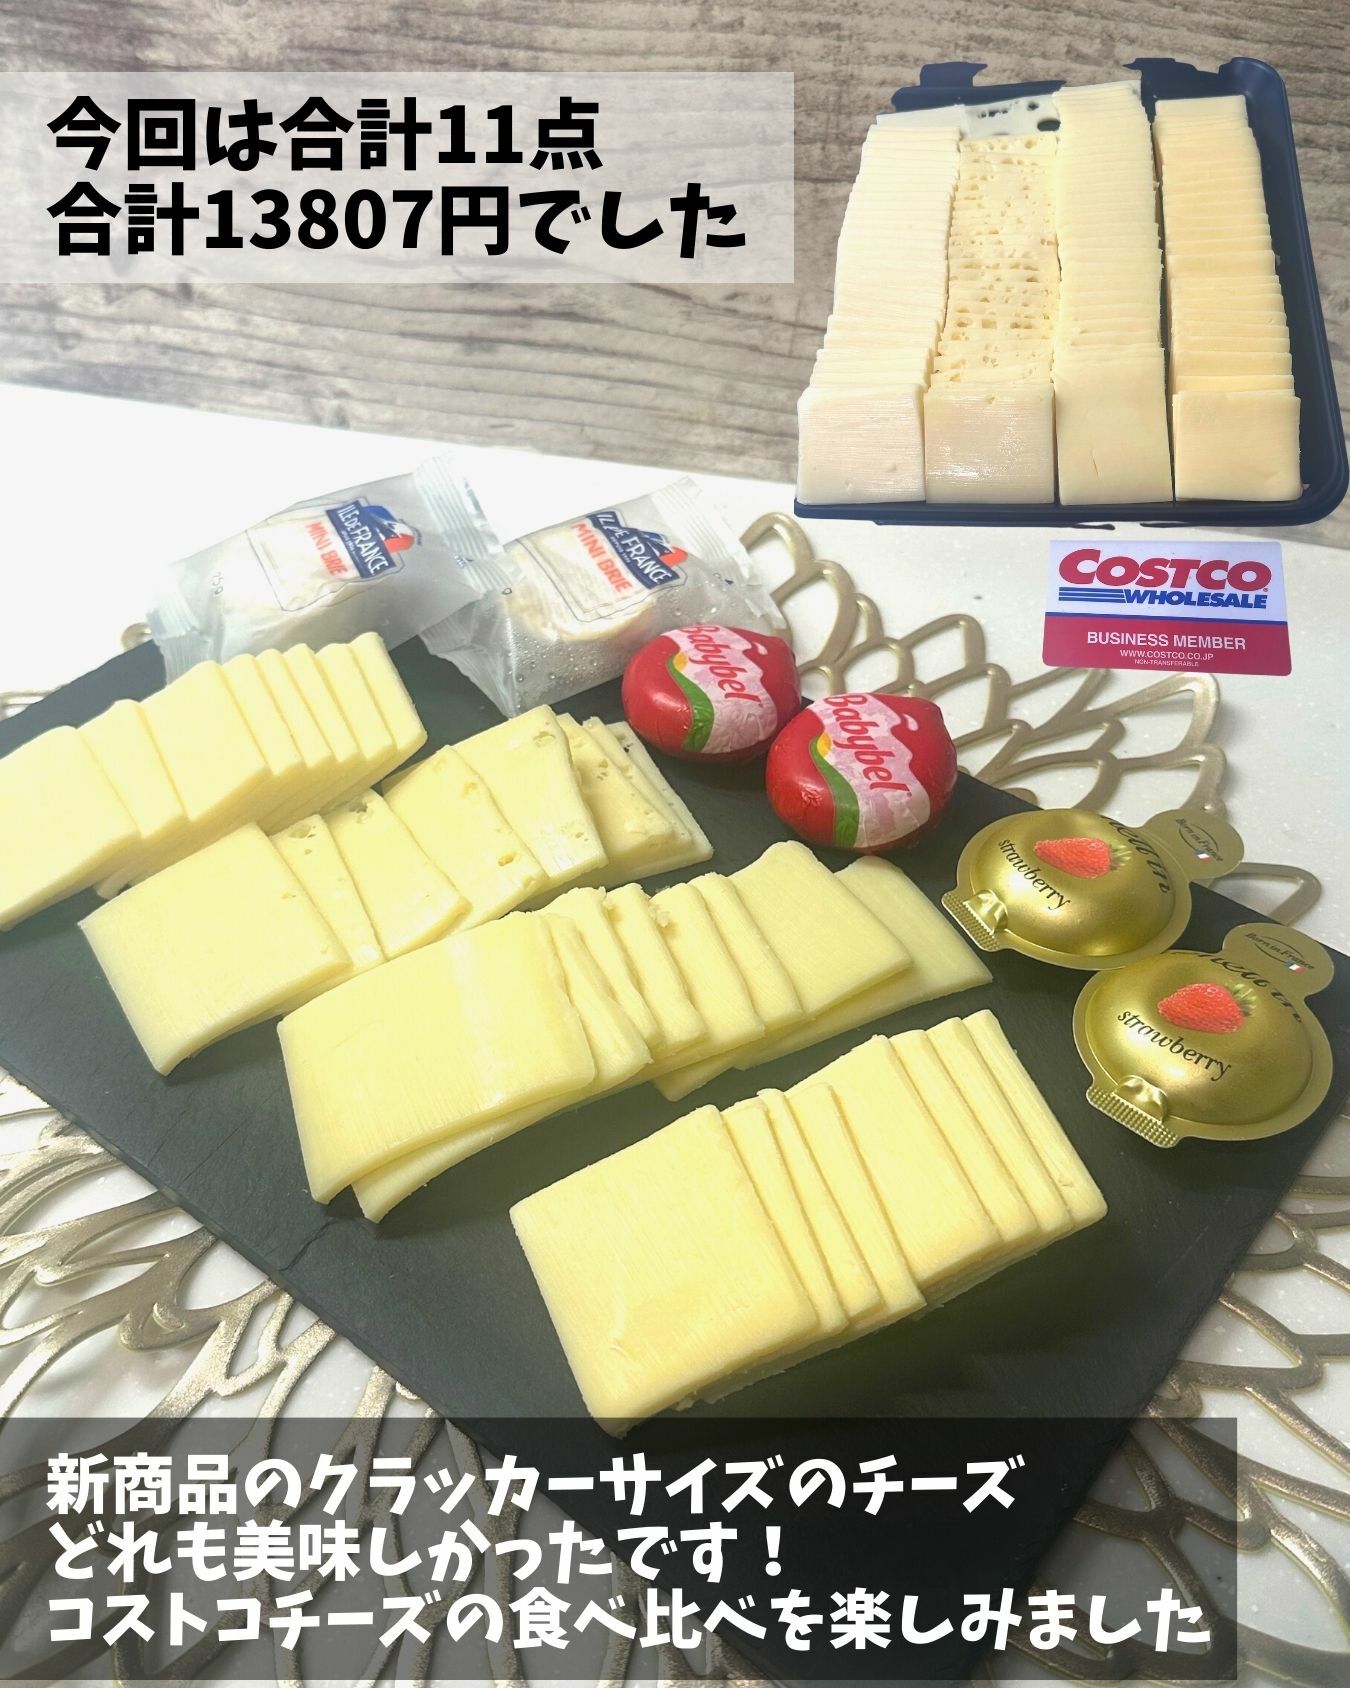 【コストコ】新商品のチーズトレイでチーズの食べ比べ